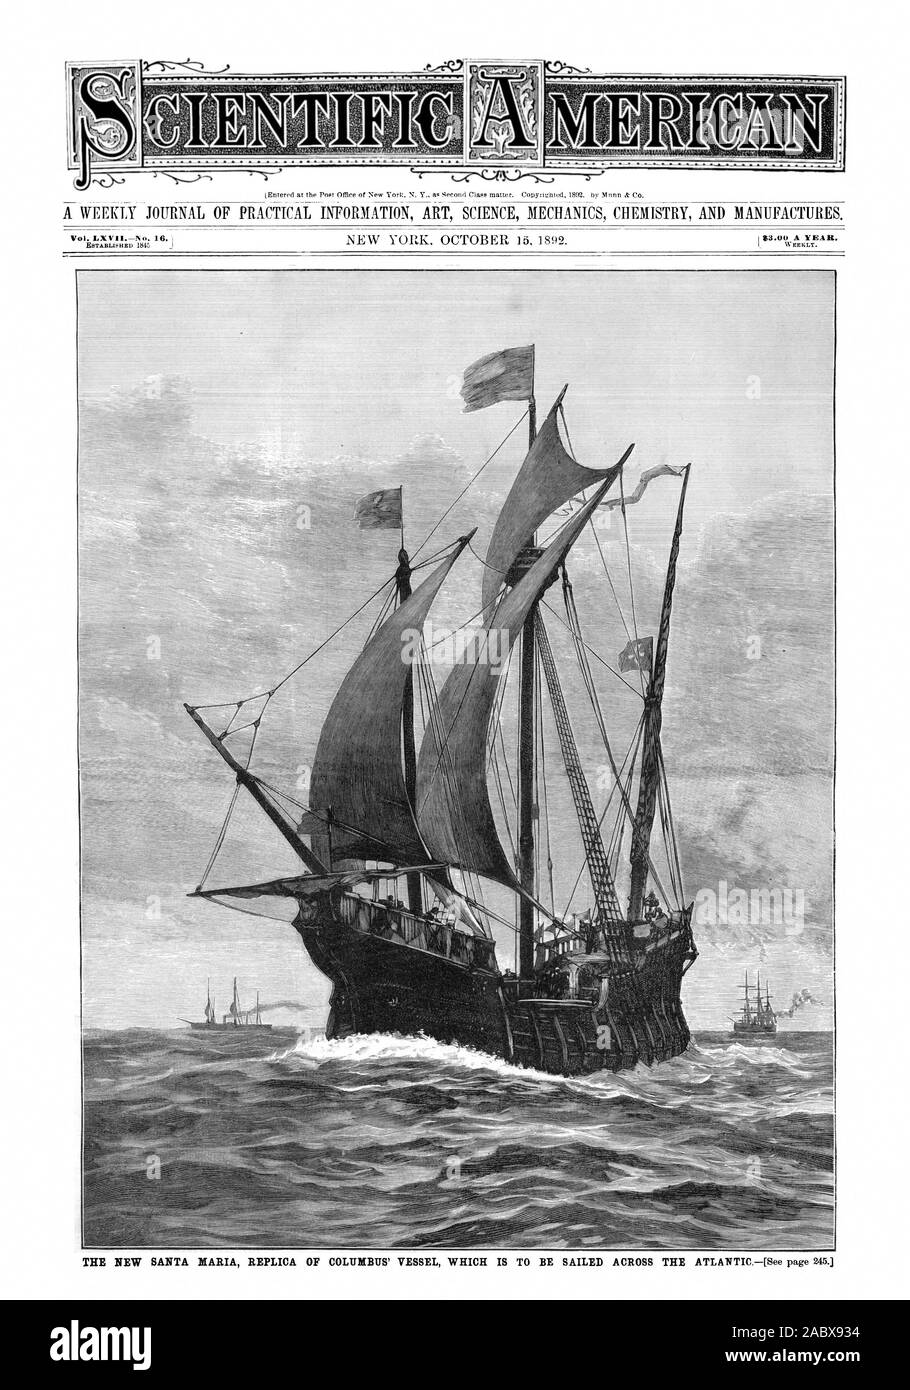 Scientific American, 1892-10-15, das neue Santa Maria, Replik von Kolumbus' Schiff, das über den Atlantik gesegelt werden Stockfoto